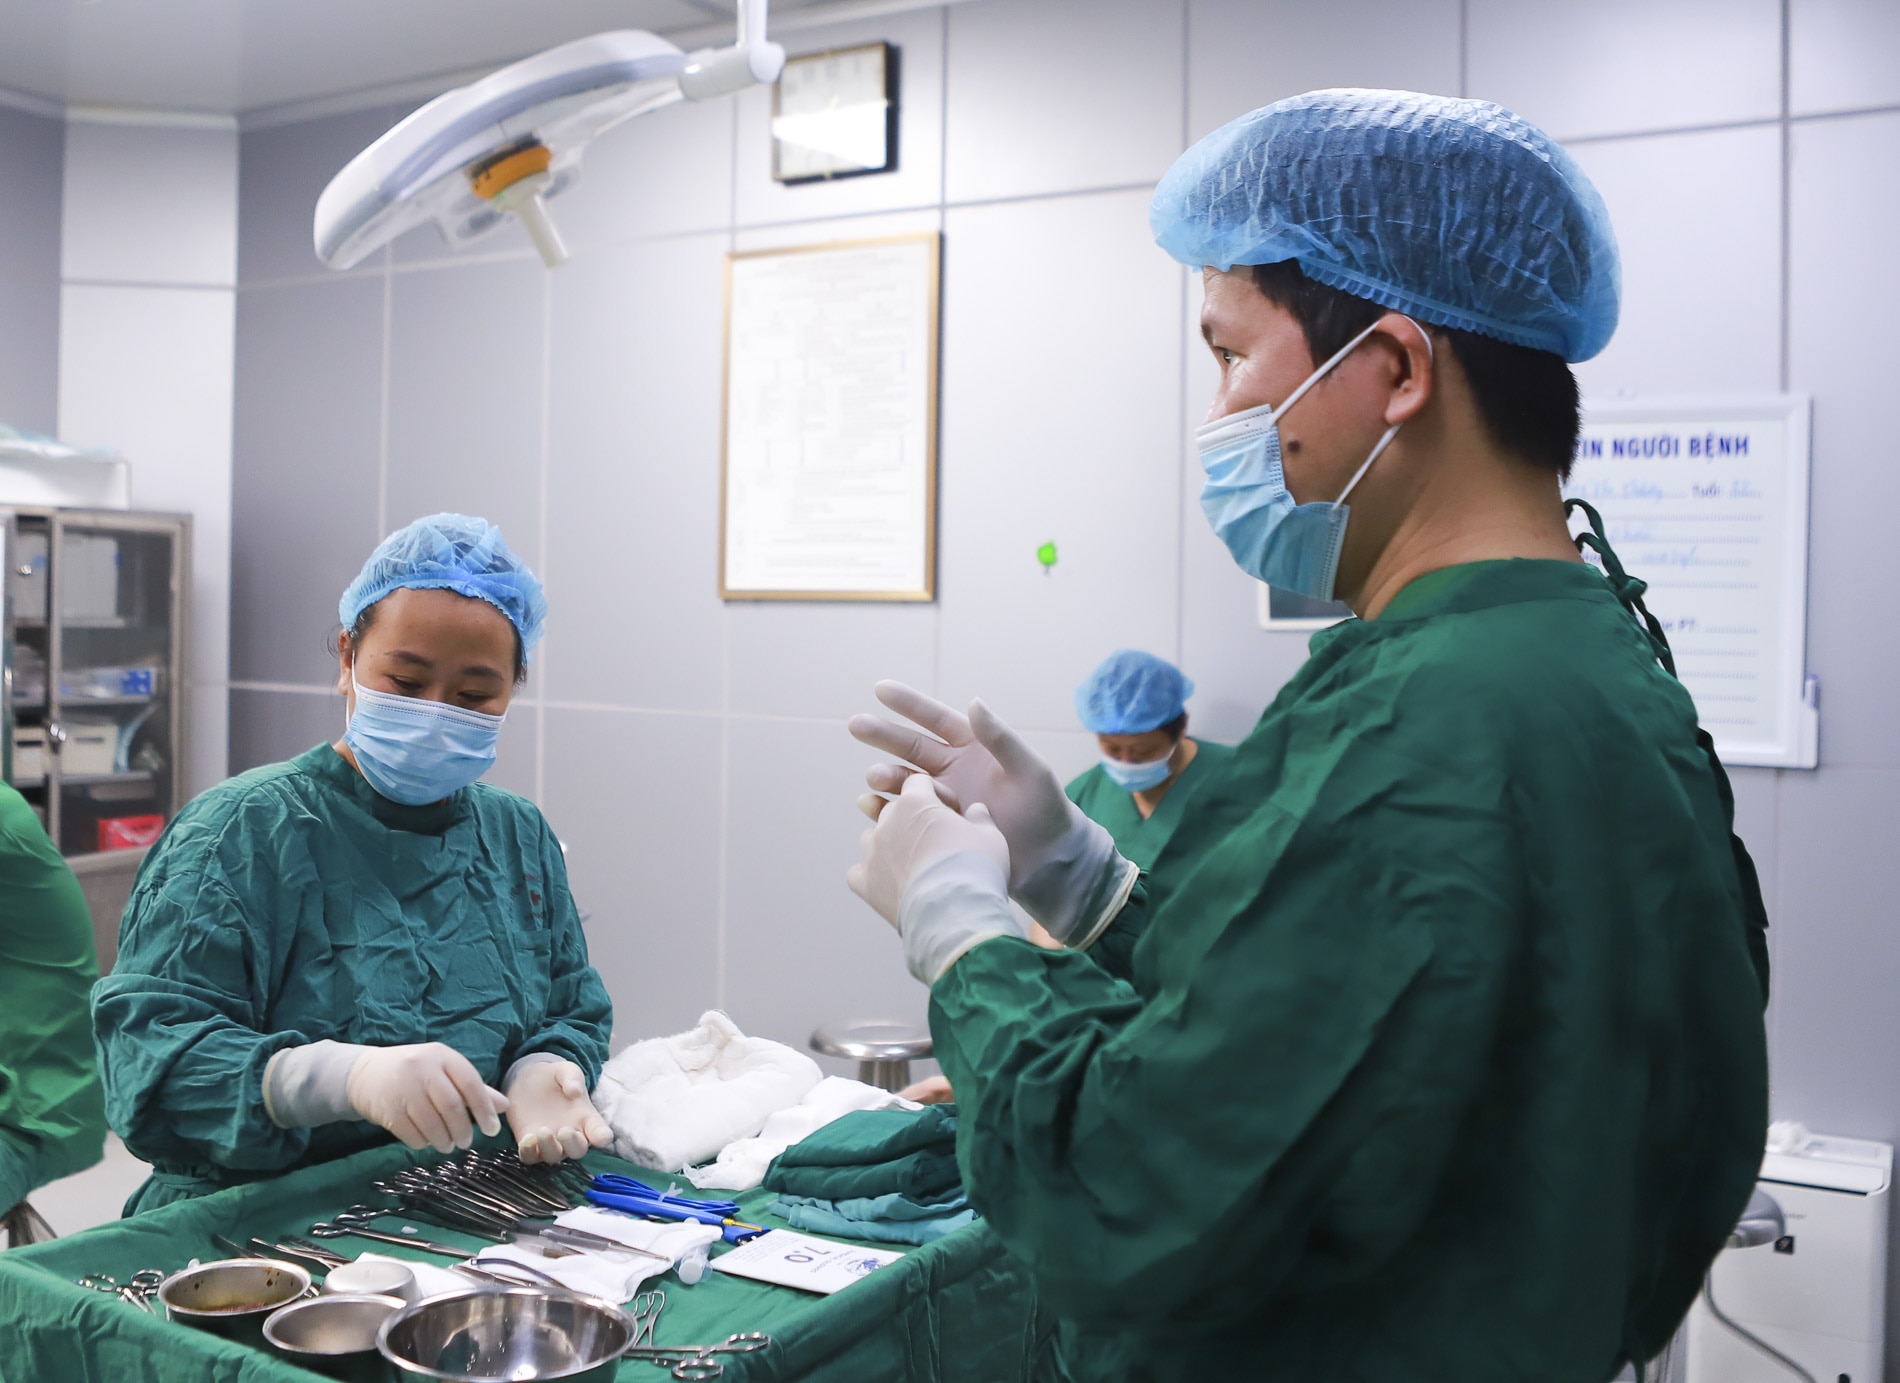 Bác sĩ Tống Hải thực hiện phẫu thuật tại Bệnh viện Bỏng Quốc gia - Ảnh: Bệnh viện cung cấp